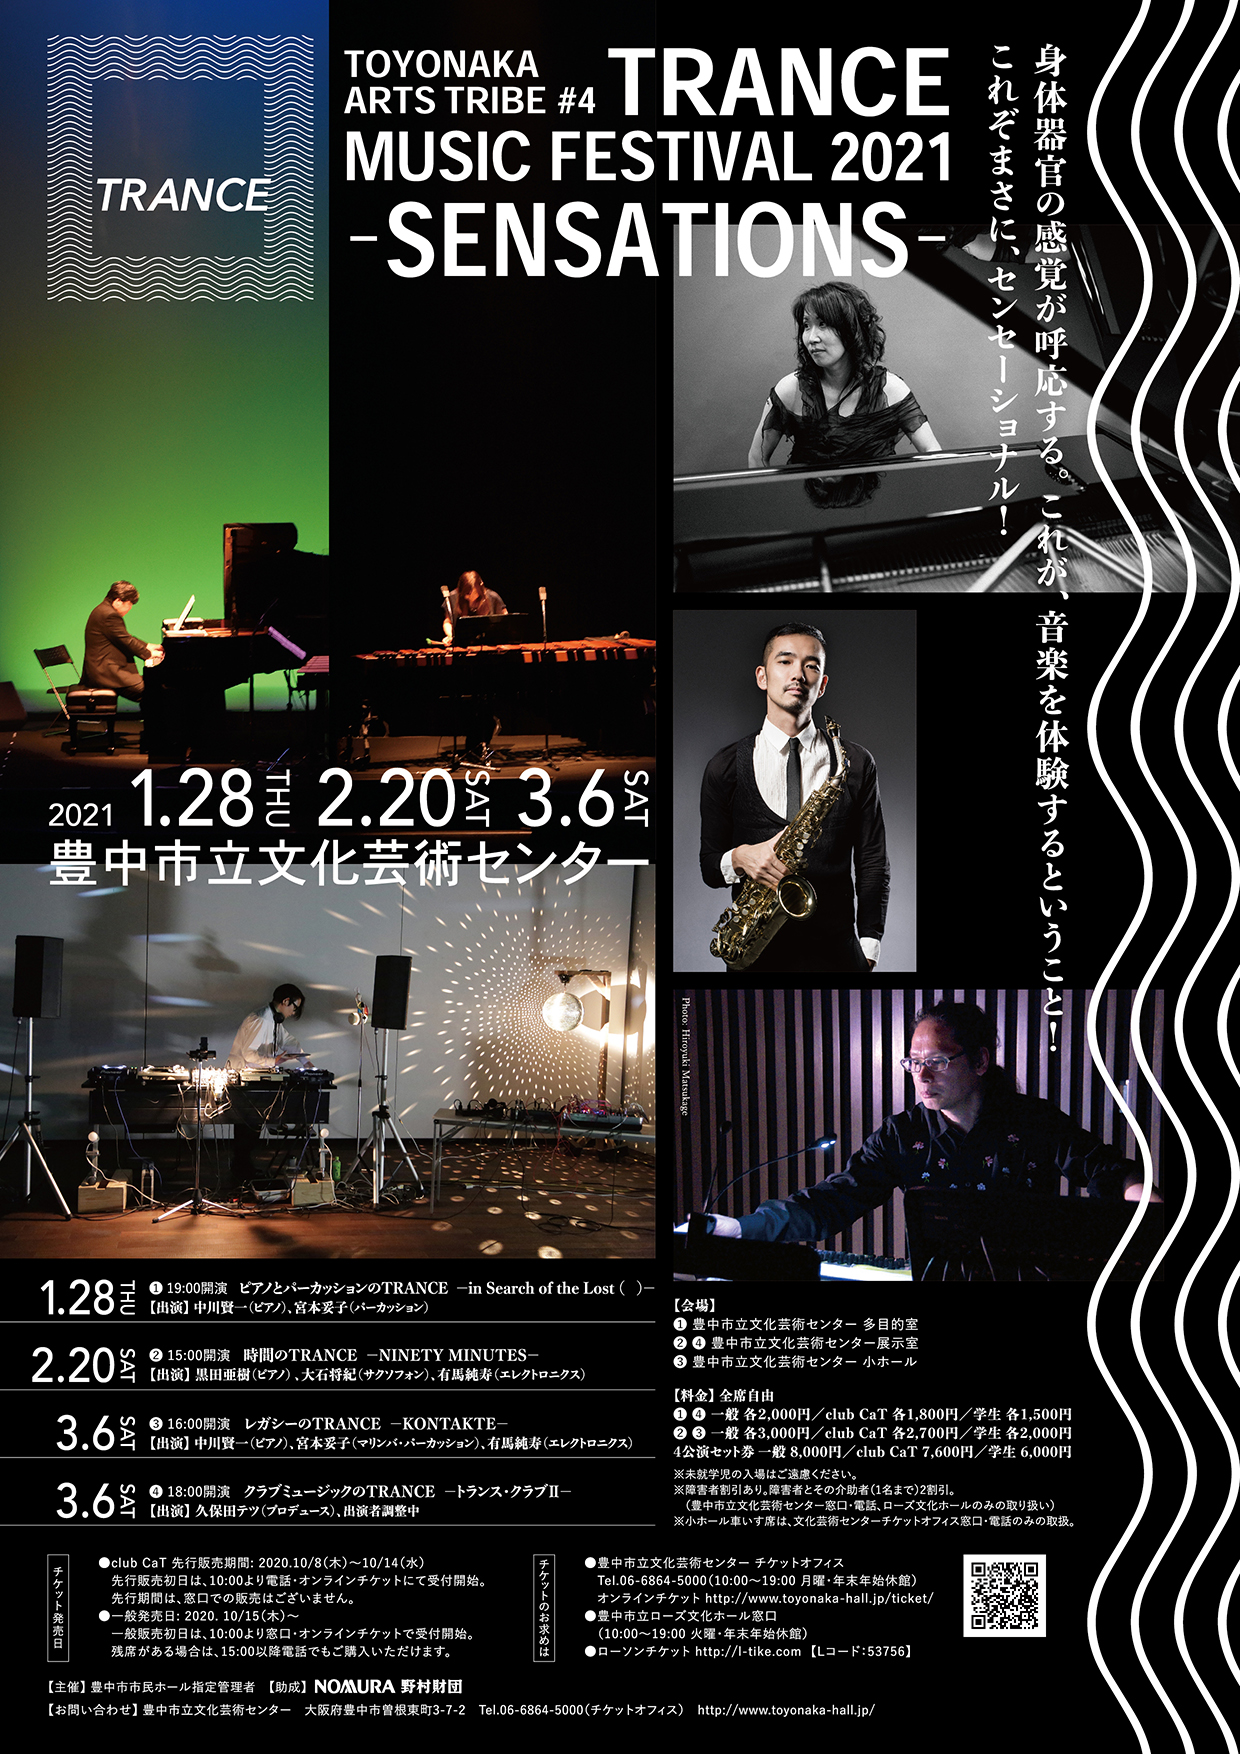 【主催】<small><br>TOYONAKA ARTS TRIBE  #4 </small><br>TRANCE MUSIC FESTIVAL 2021 -SENSATIONS-